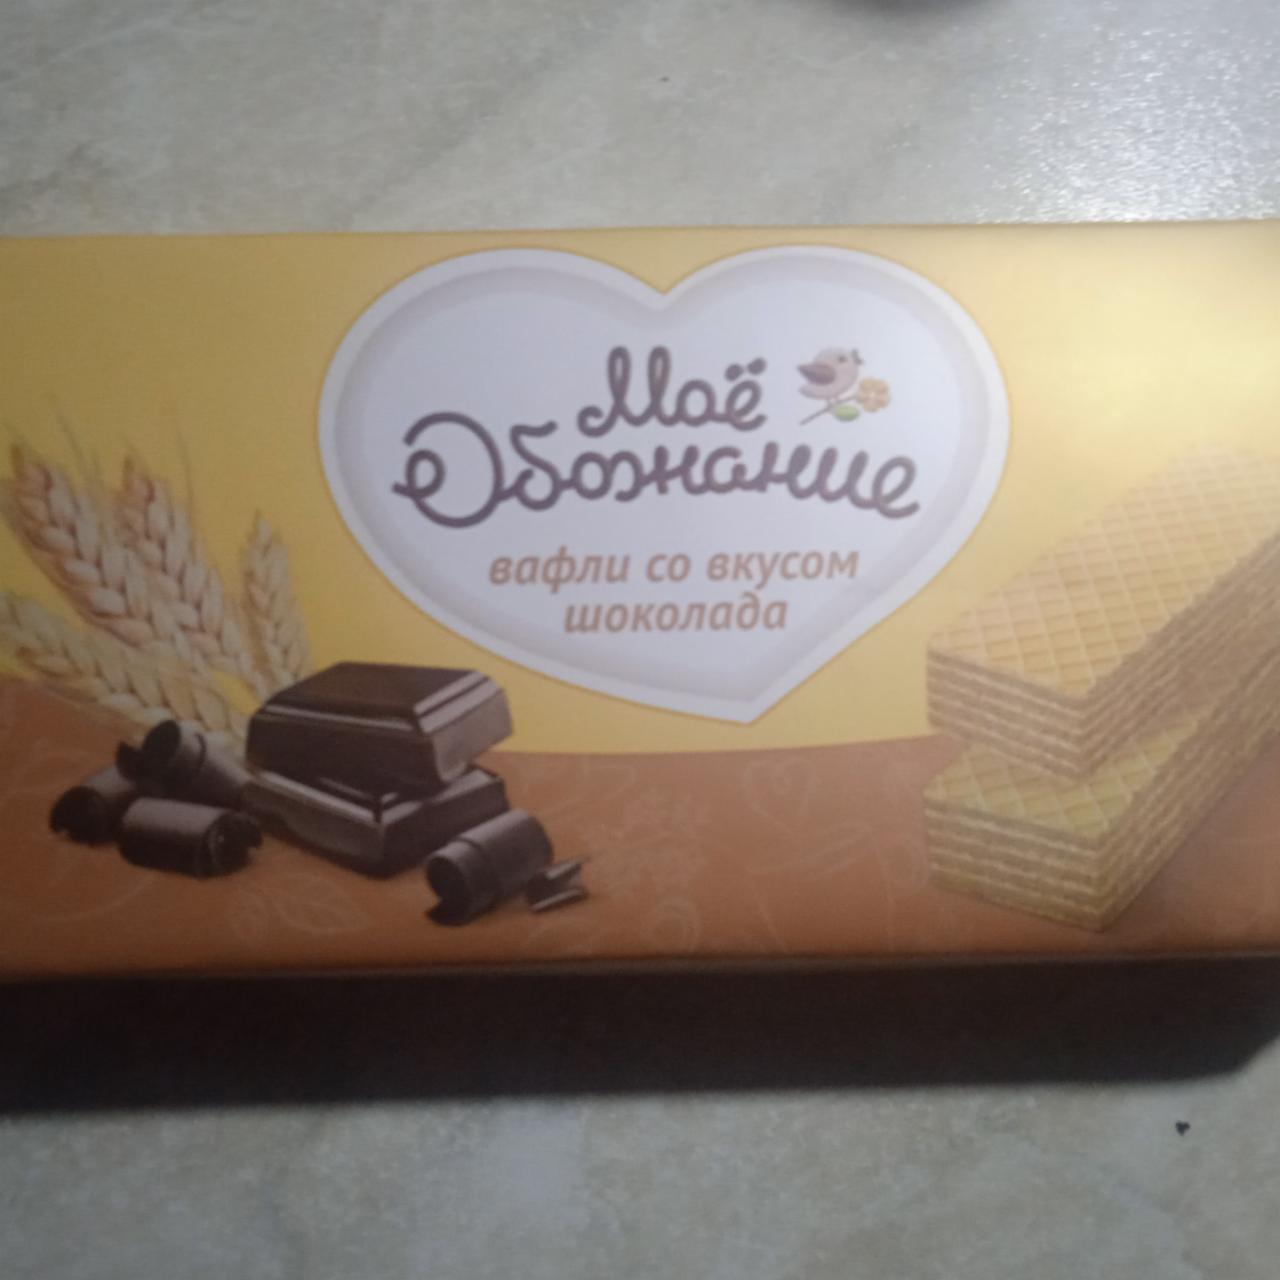 Фото - Вафли Мое обожание со вкусом шоколада оригинальные Коломенское